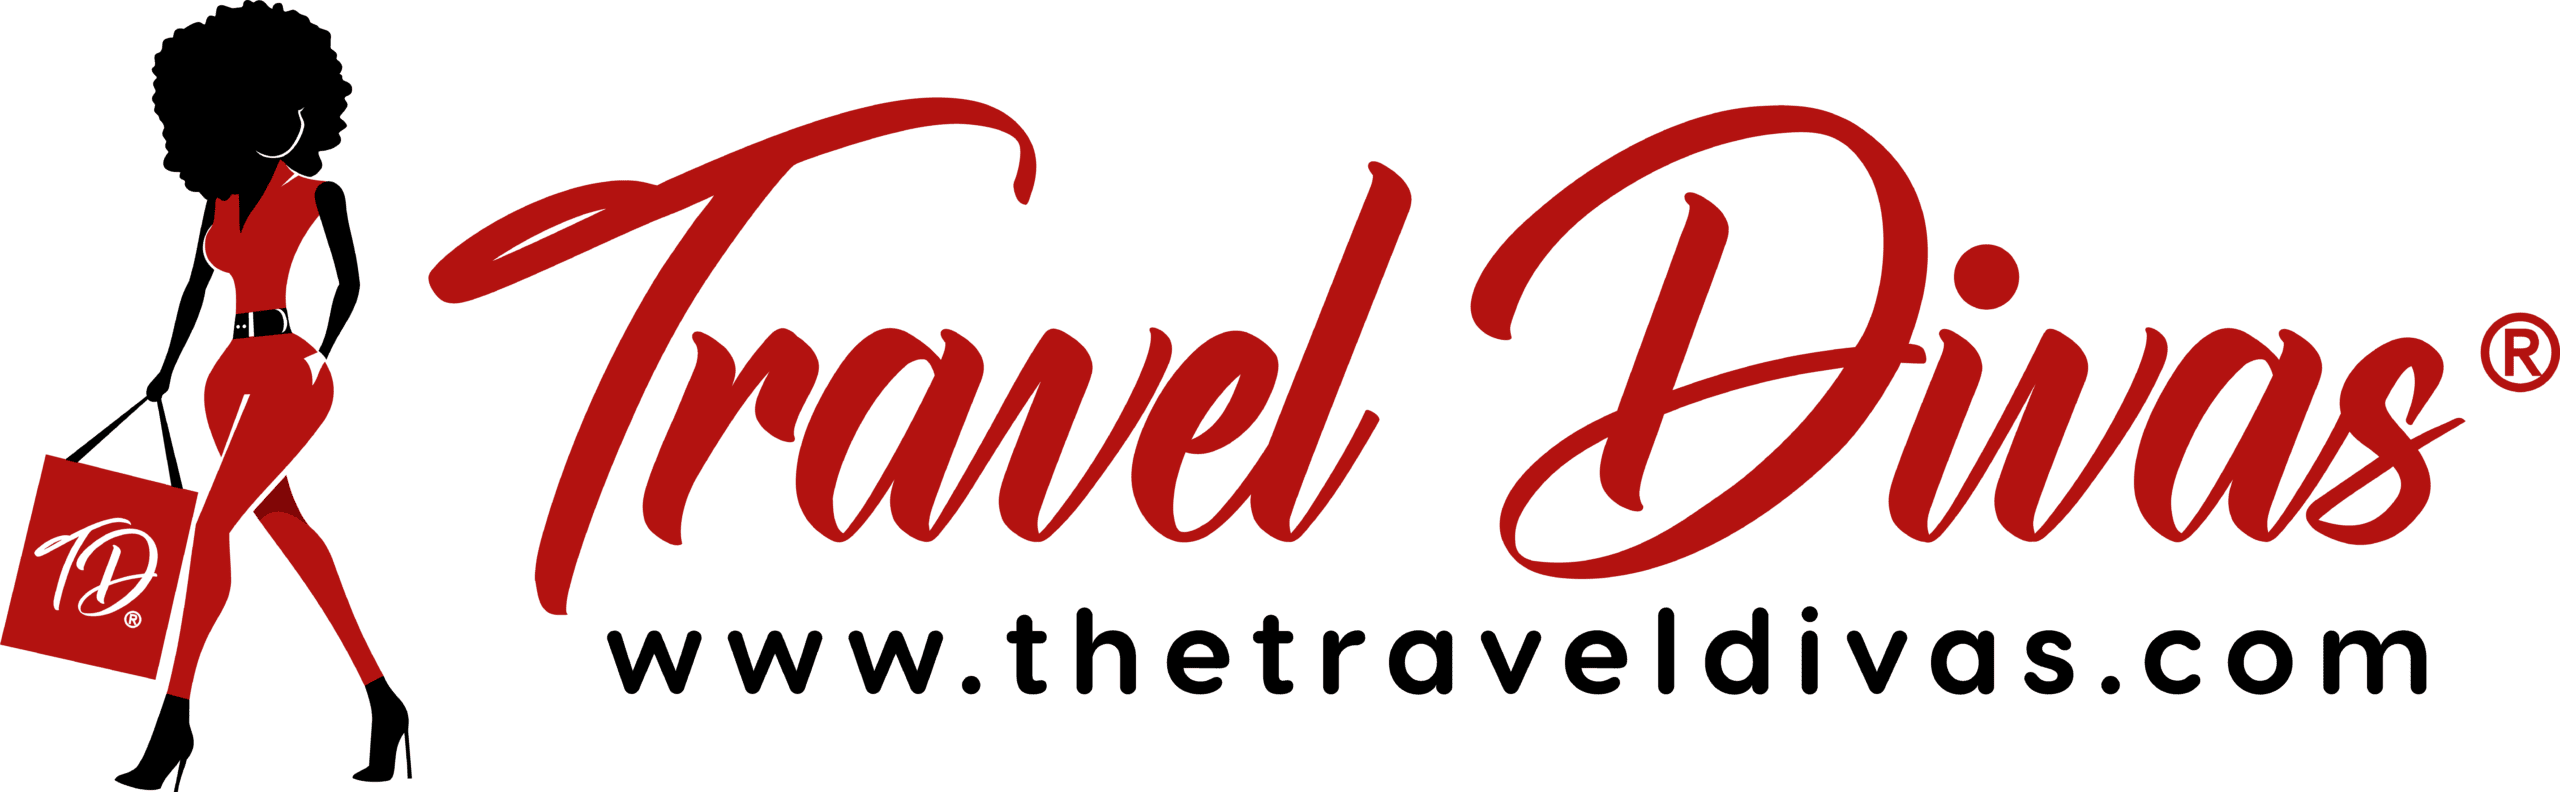 travel diva trips